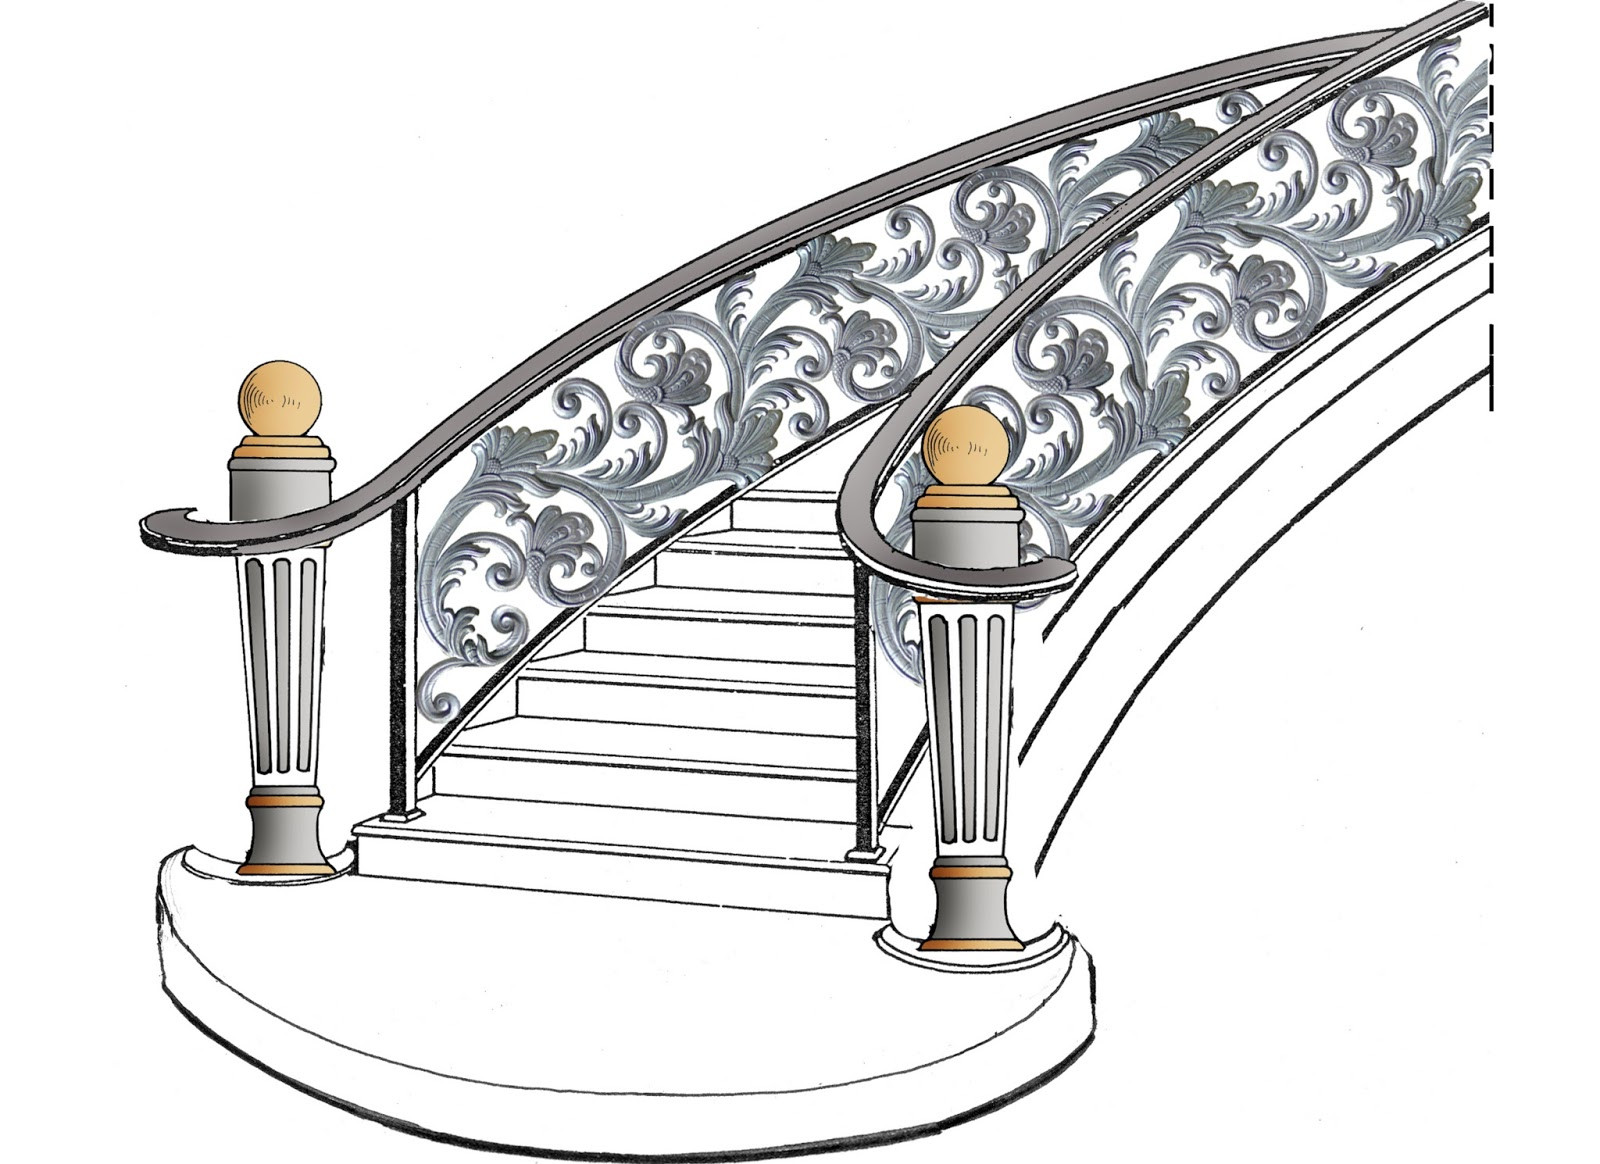 nuansa klasik workshop: railing tangga layang klasik